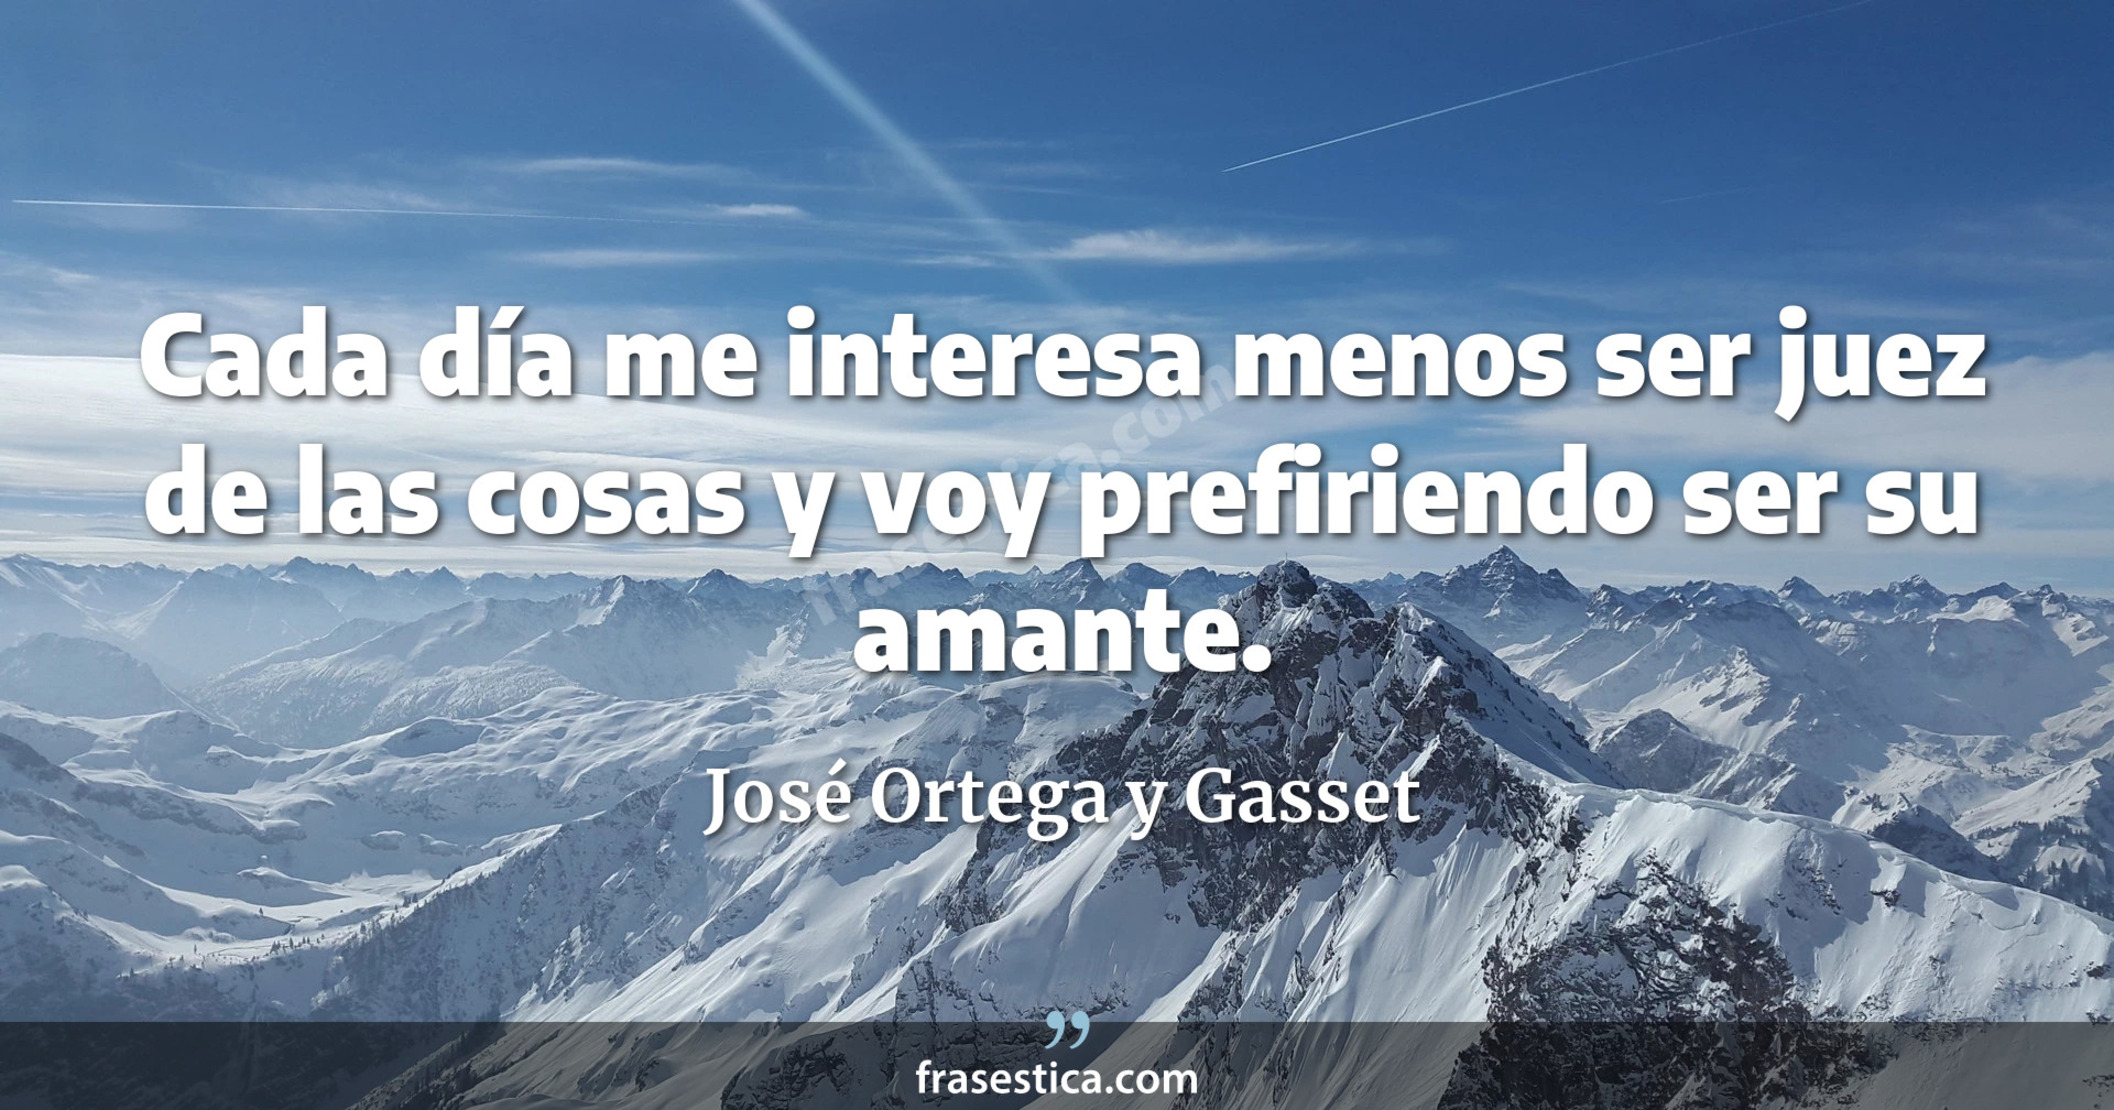 Cada día me interesa menos ser juez de las cosas y voy prefiriendo ser su amante. - José Ortega y Gasset